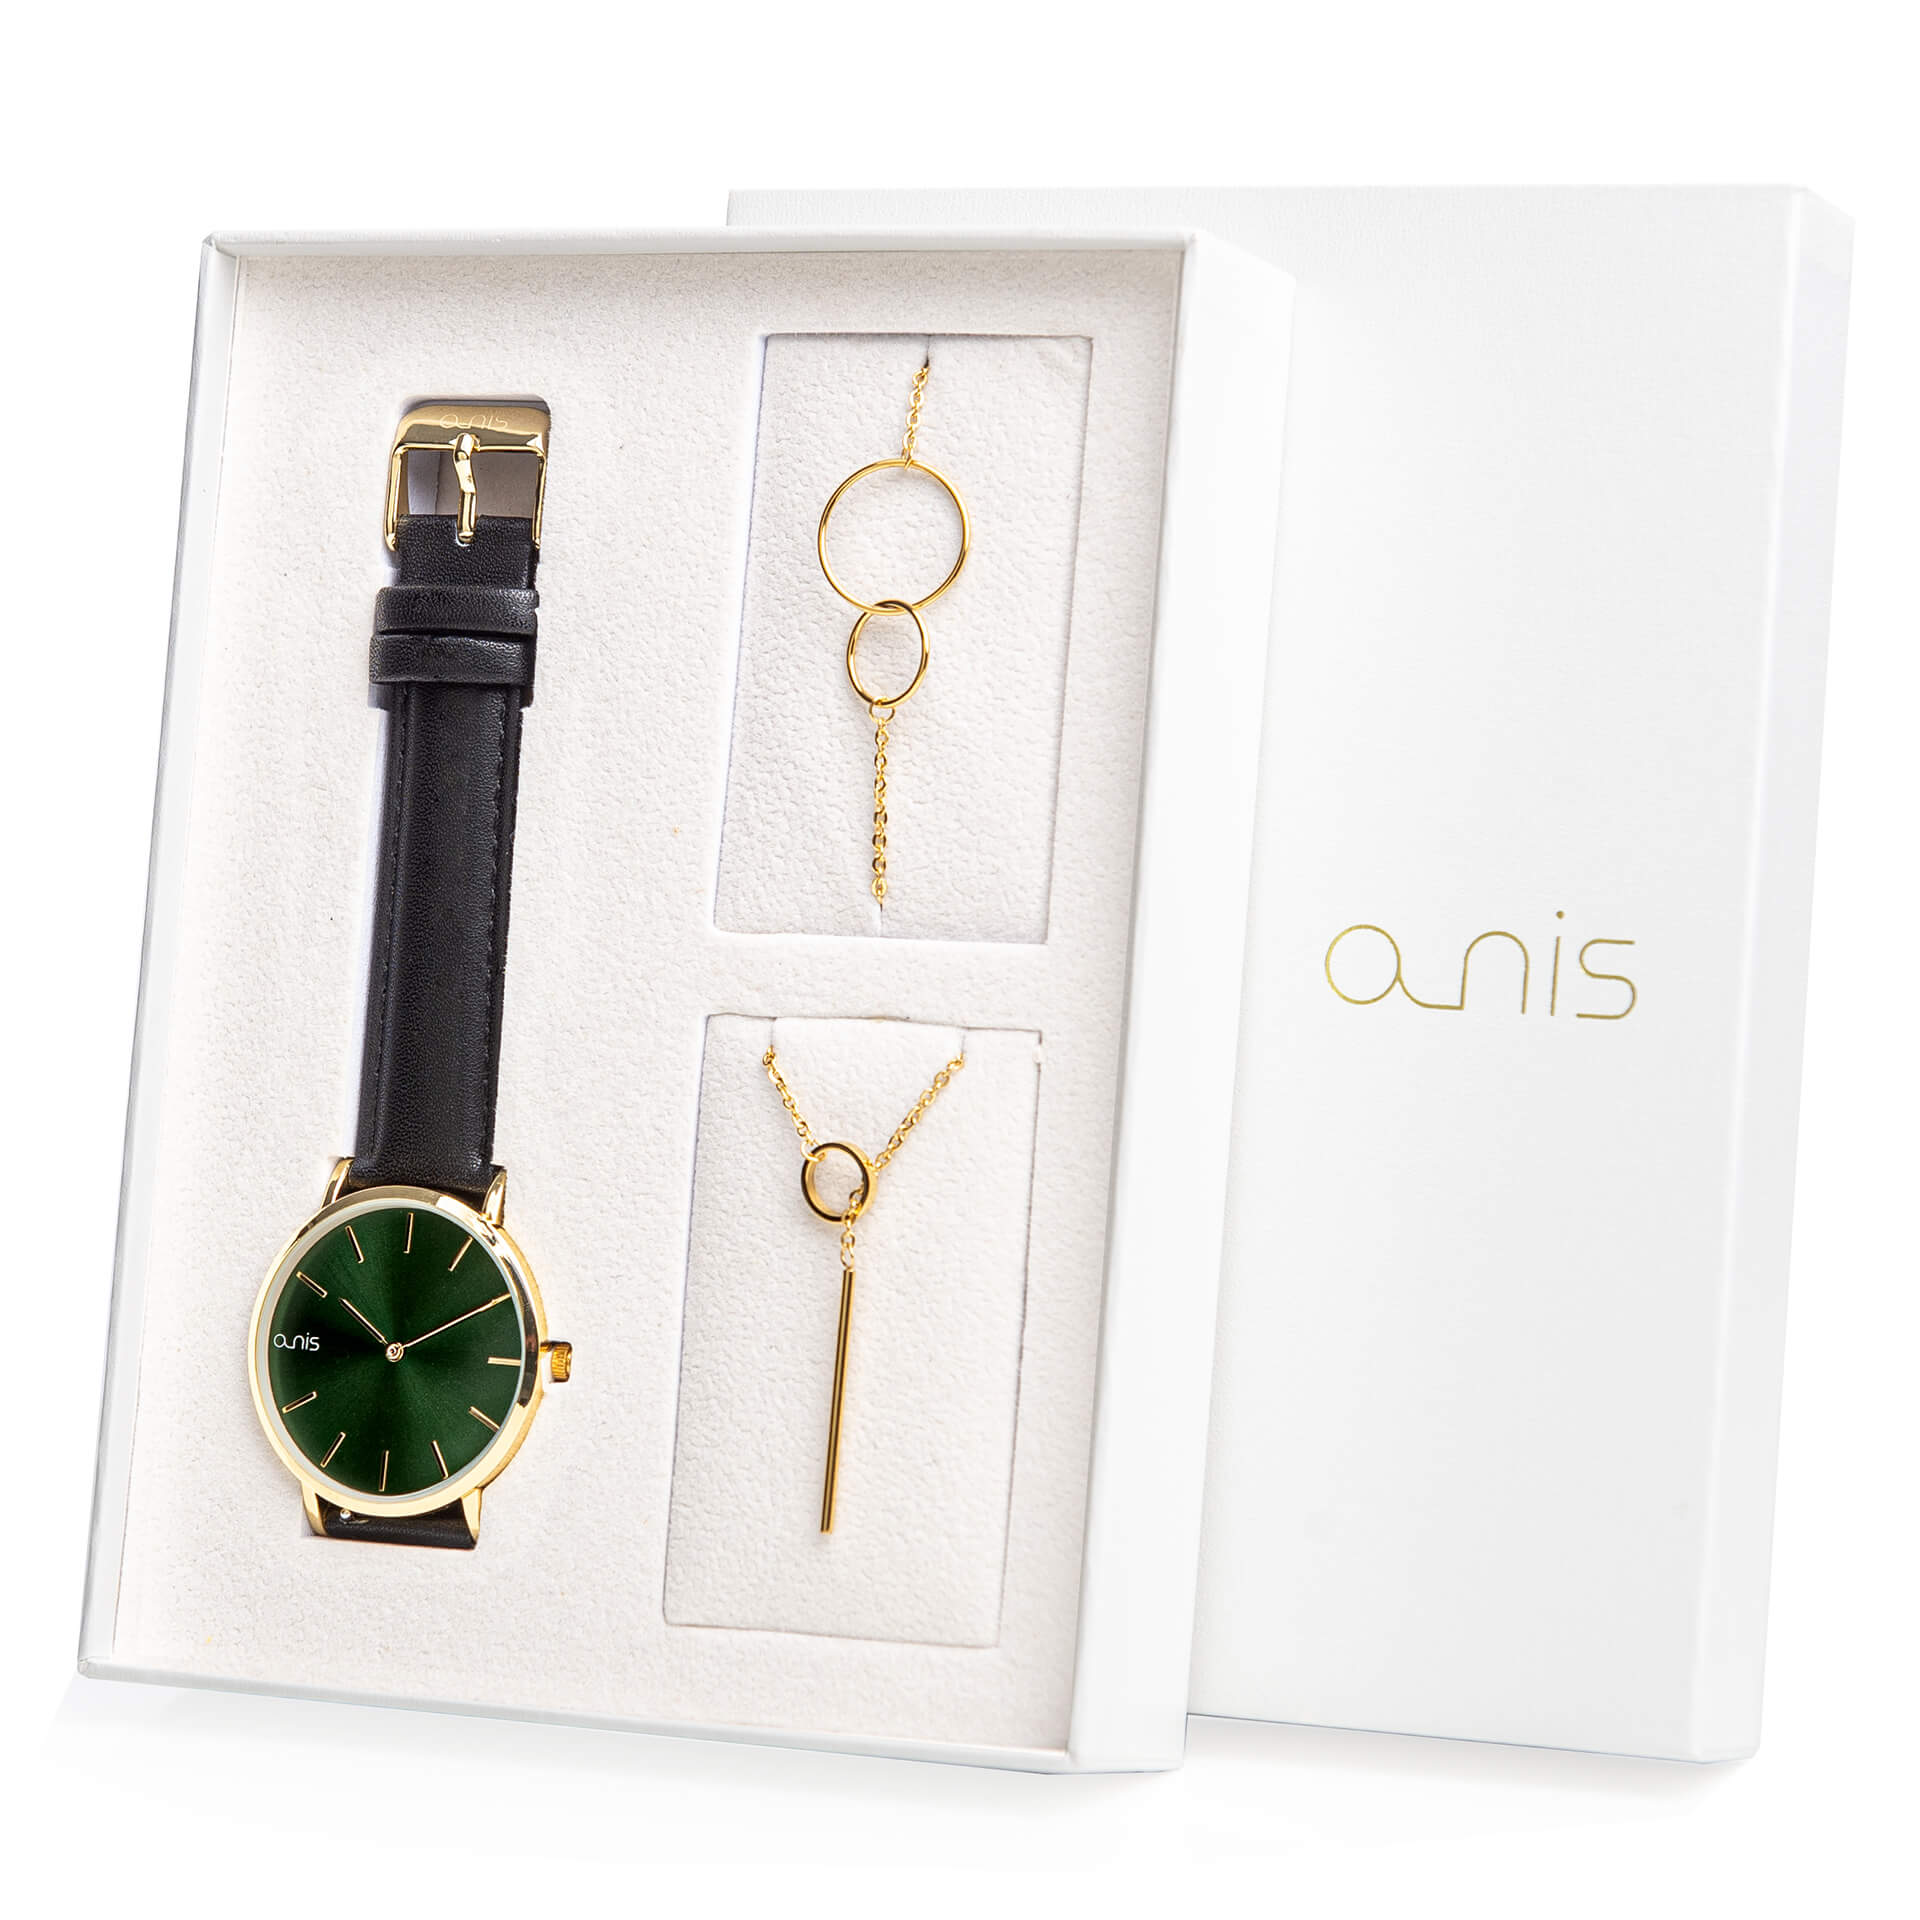 A-NIS Set hodinek, náhrdelníku a náramku AS100-26